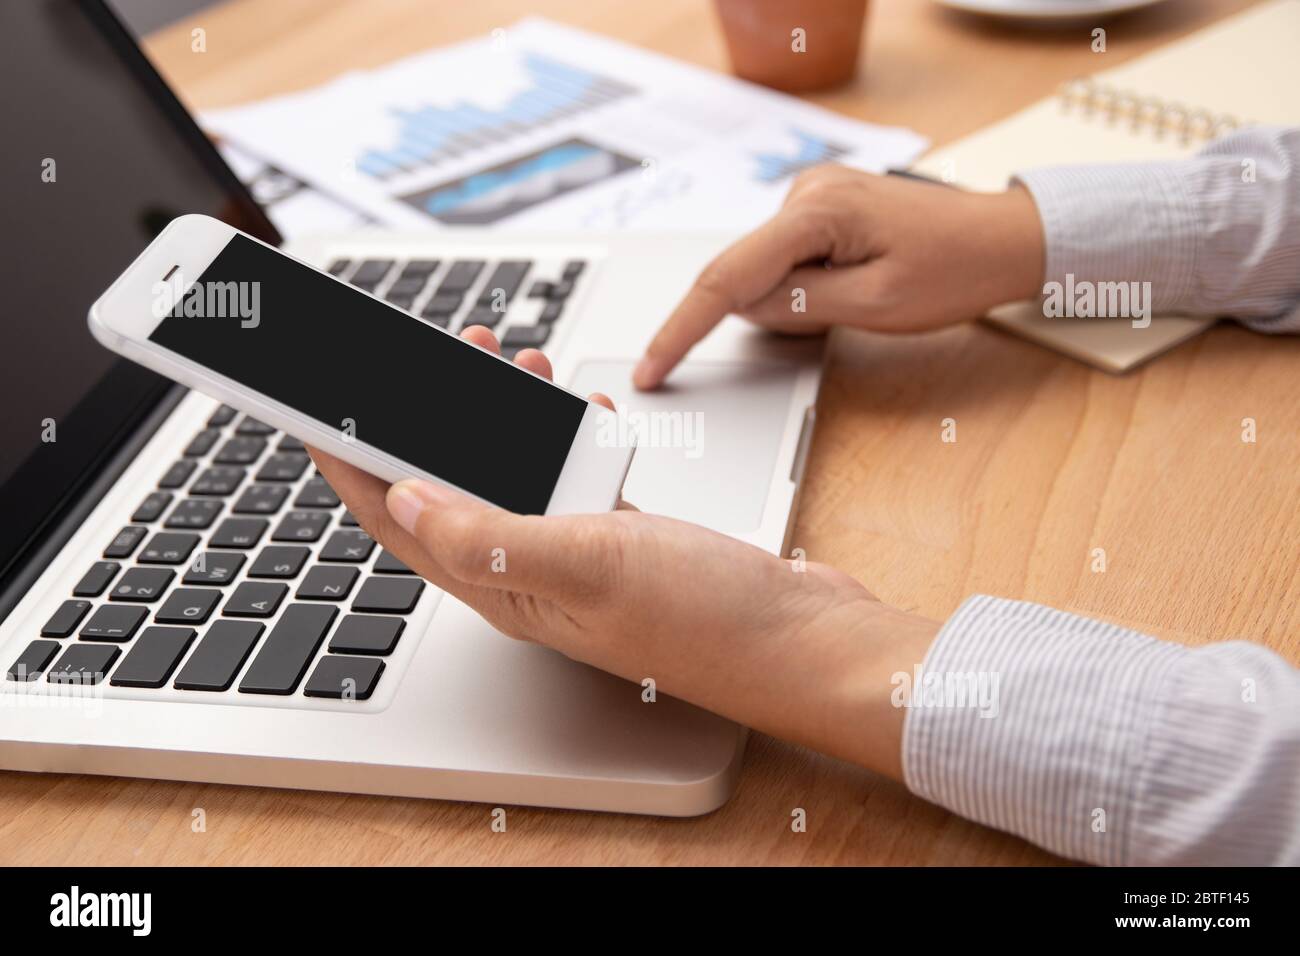 Menschen arbeiten von zu Hause aus mit Smartphone und Notebook-Laptop-Computer mit leeren schwarzen Bildschirm am Arbeitsplatz, anonymes Gesicht. Neue normale mit Internet Stockfoto